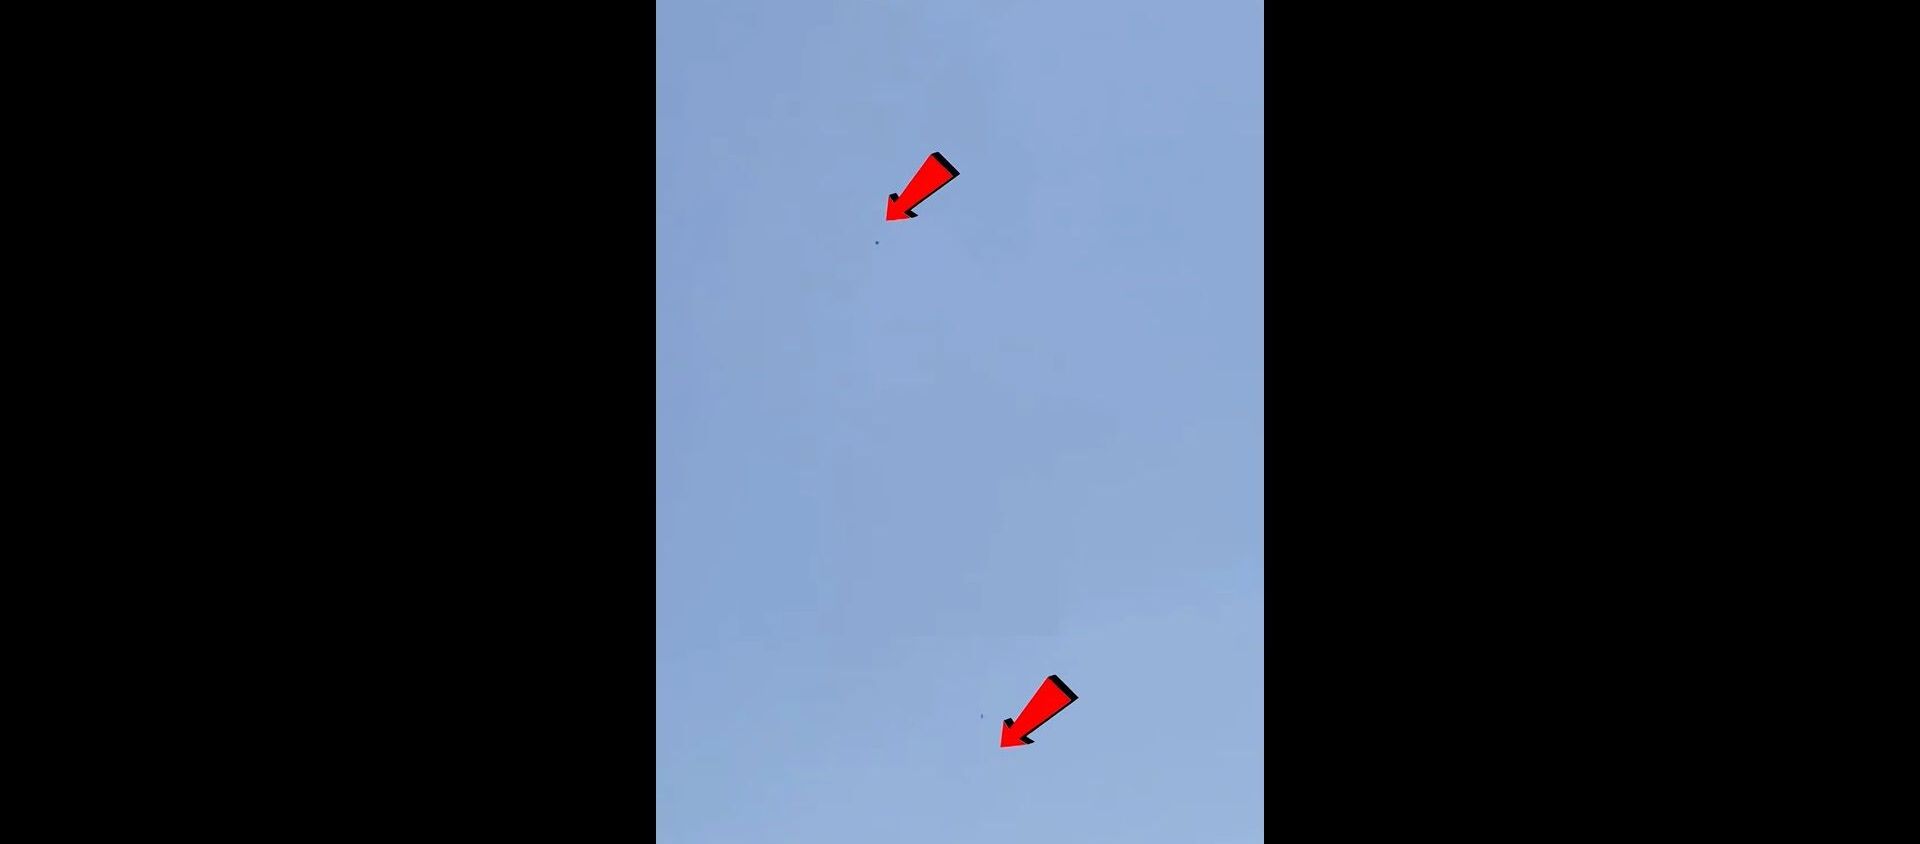 ქაბულიდან გაფრენილი თვითმფრინავიდან ორი ადამიანი ჩამოვარდა - ვიდეო - Sputnik საქართველო, 1920, 16.08.2021